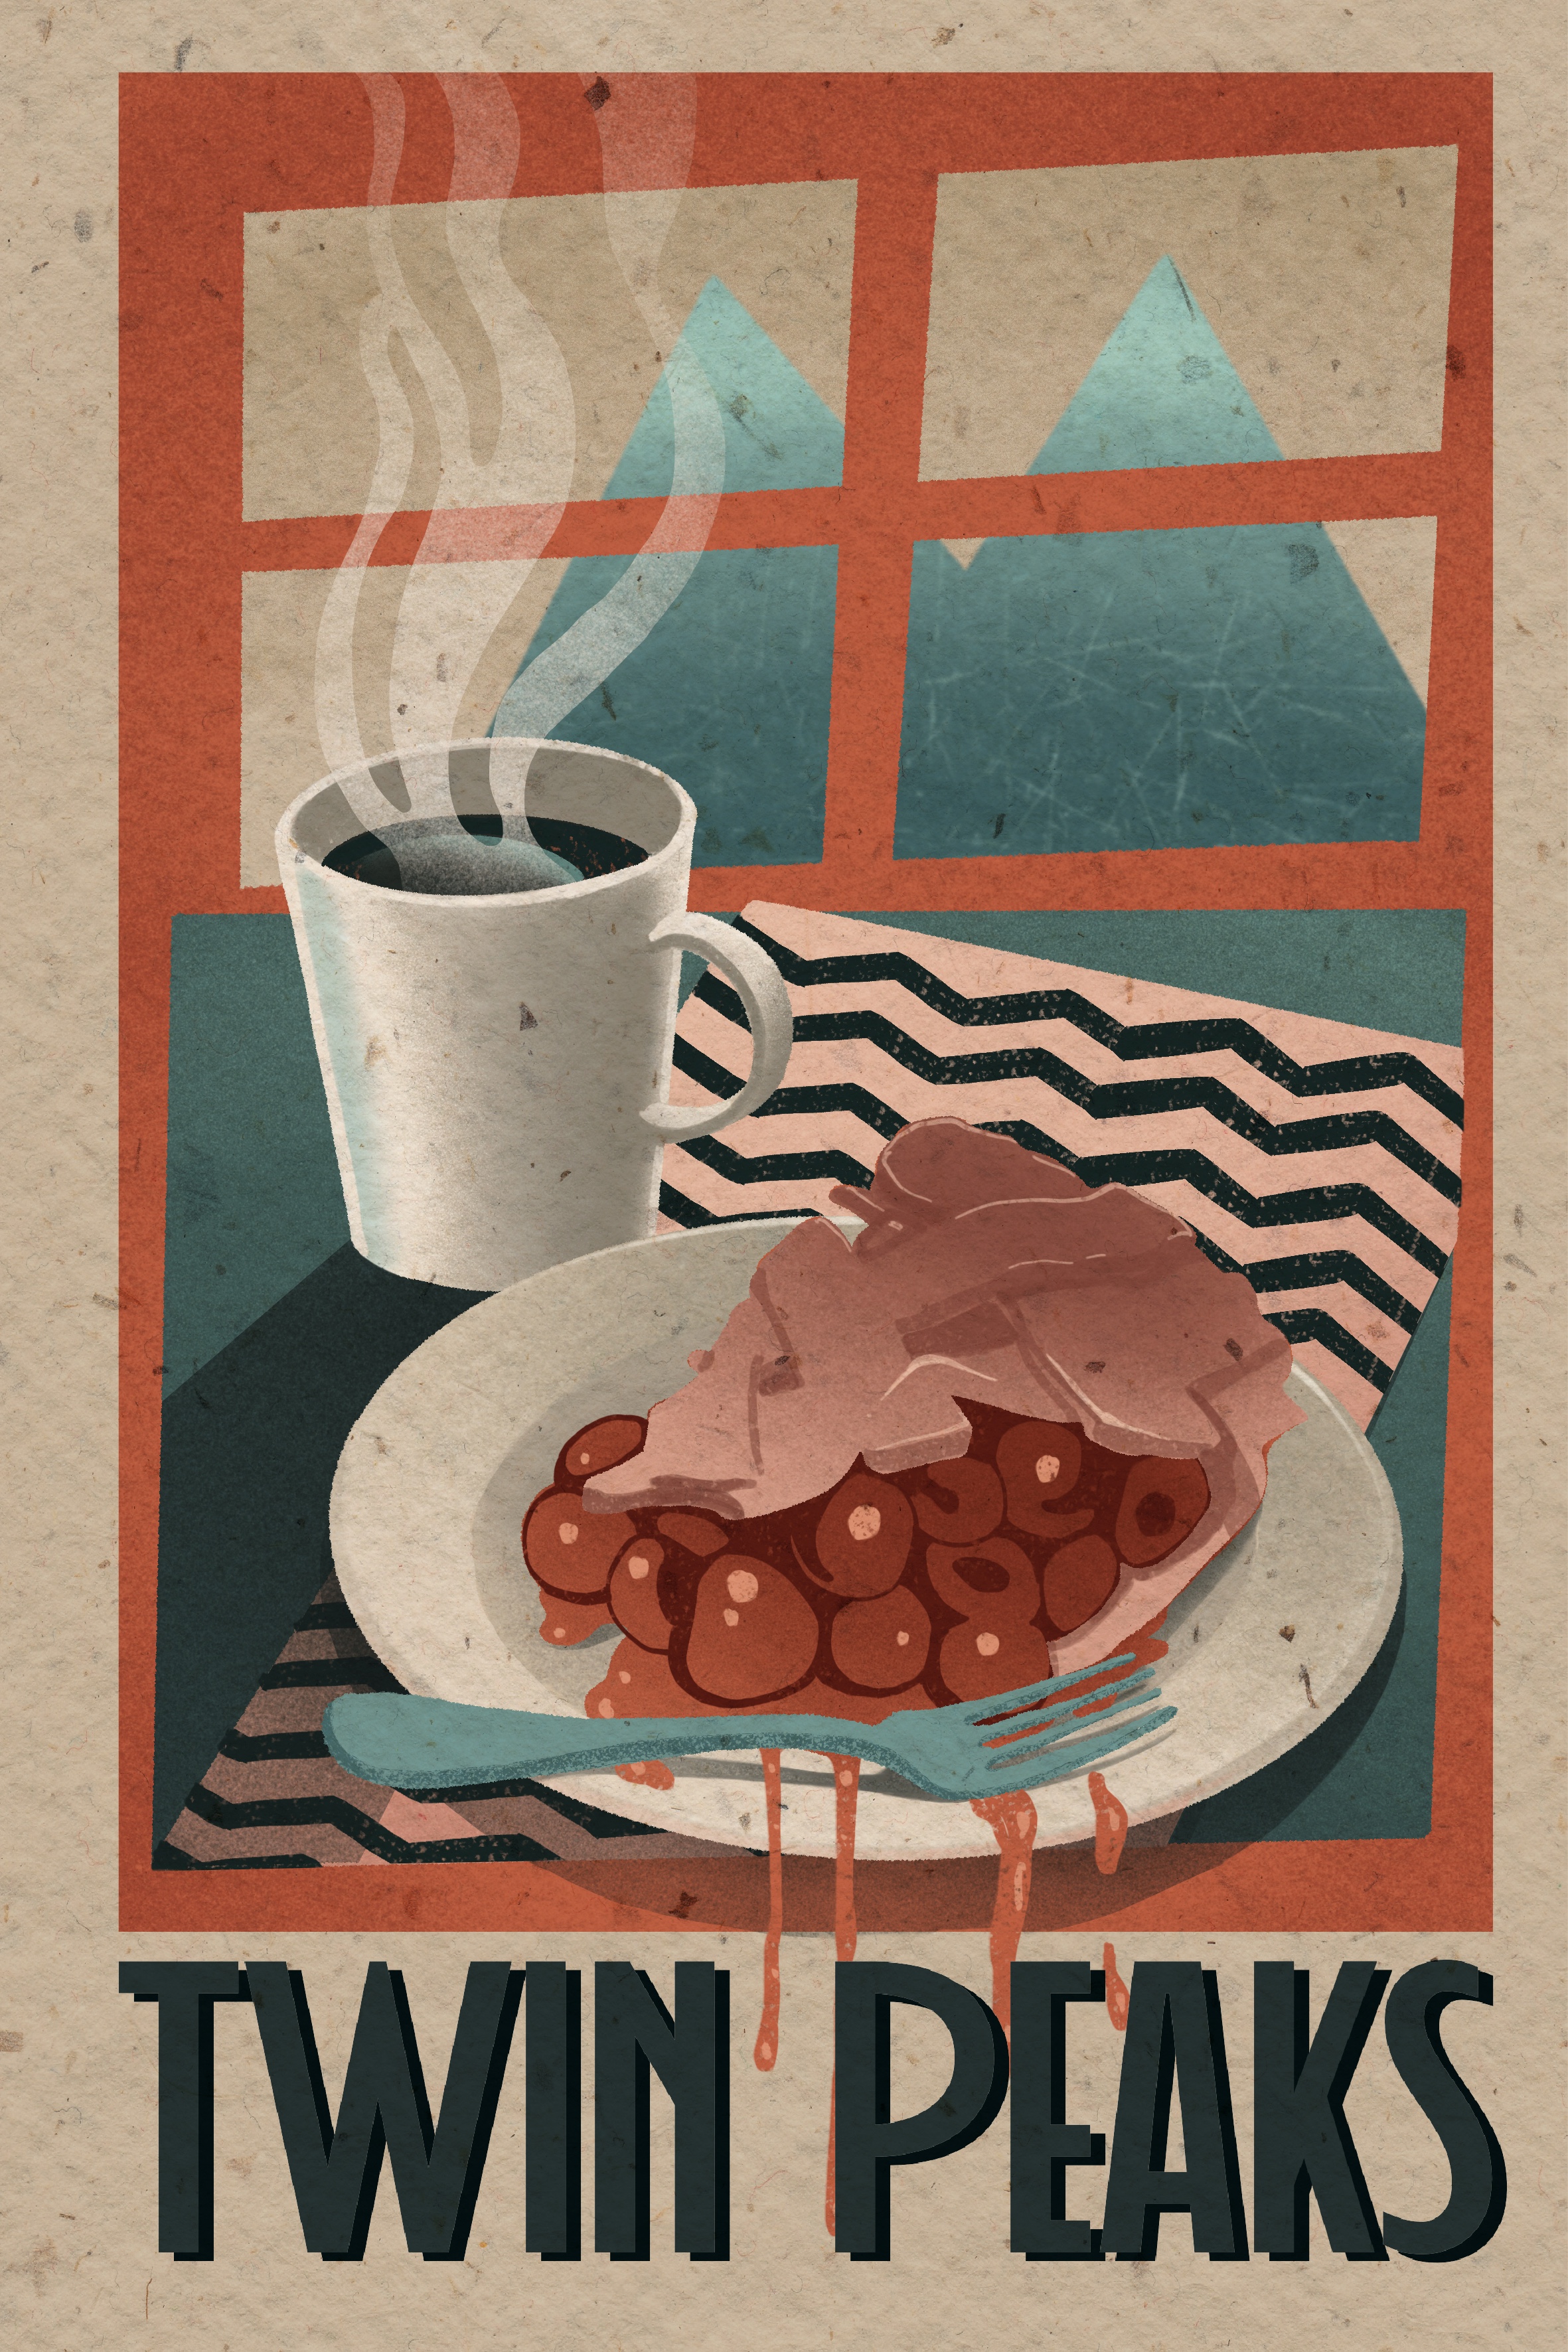 Coffee & Cherry Pie TWIN PEAKS poster by Iwona Koźlarzewska on Dribbble